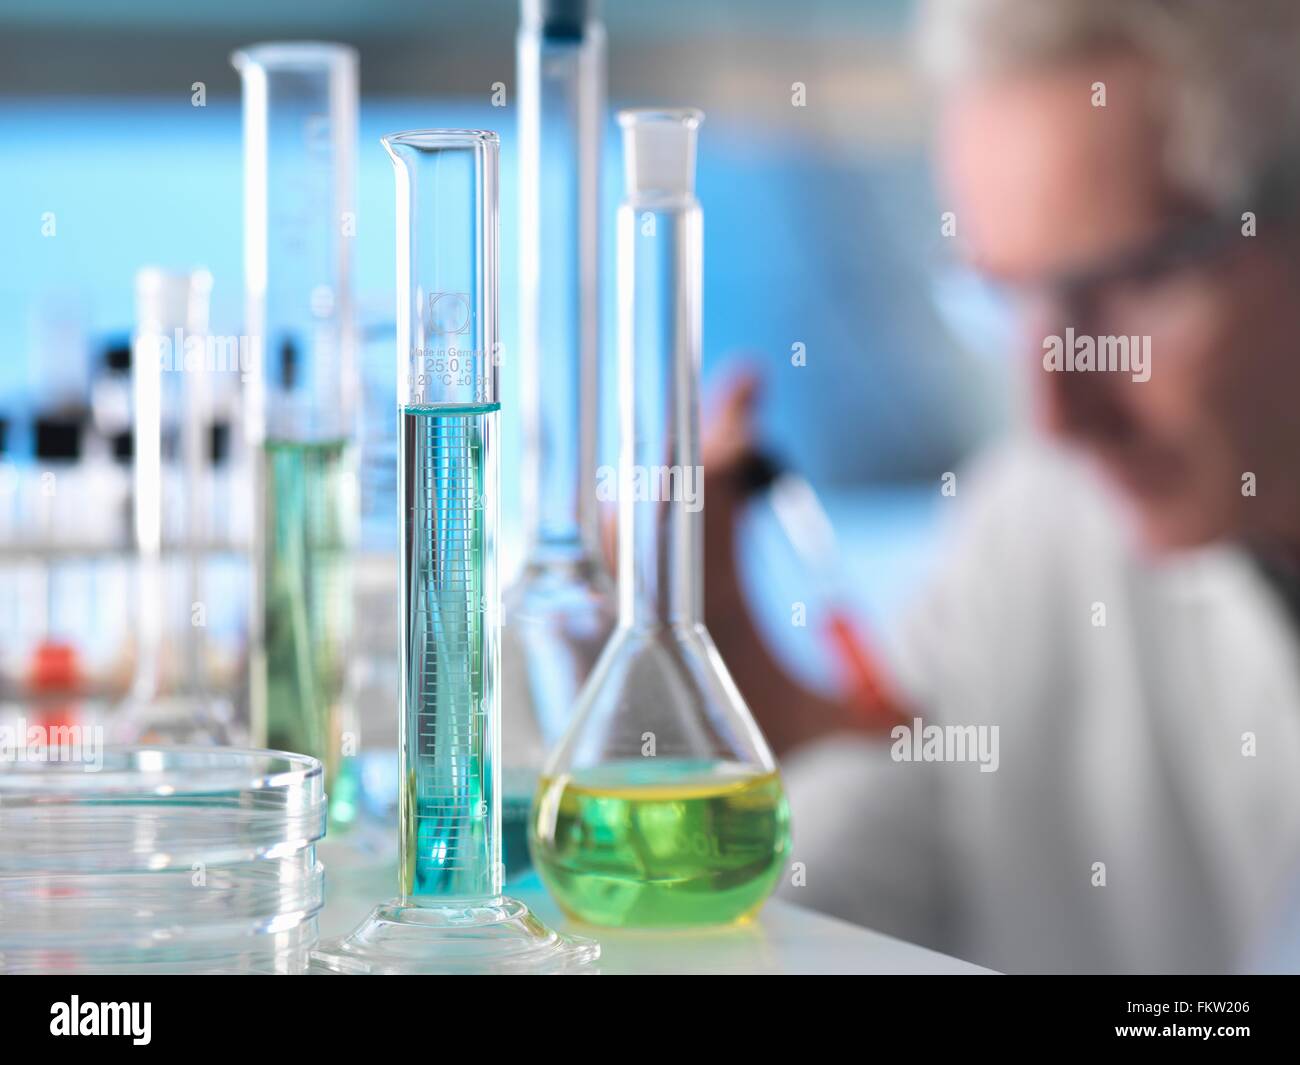 Wissenschaftler, die Vorbereitung chemischen Experiments im Labor Stockfoto